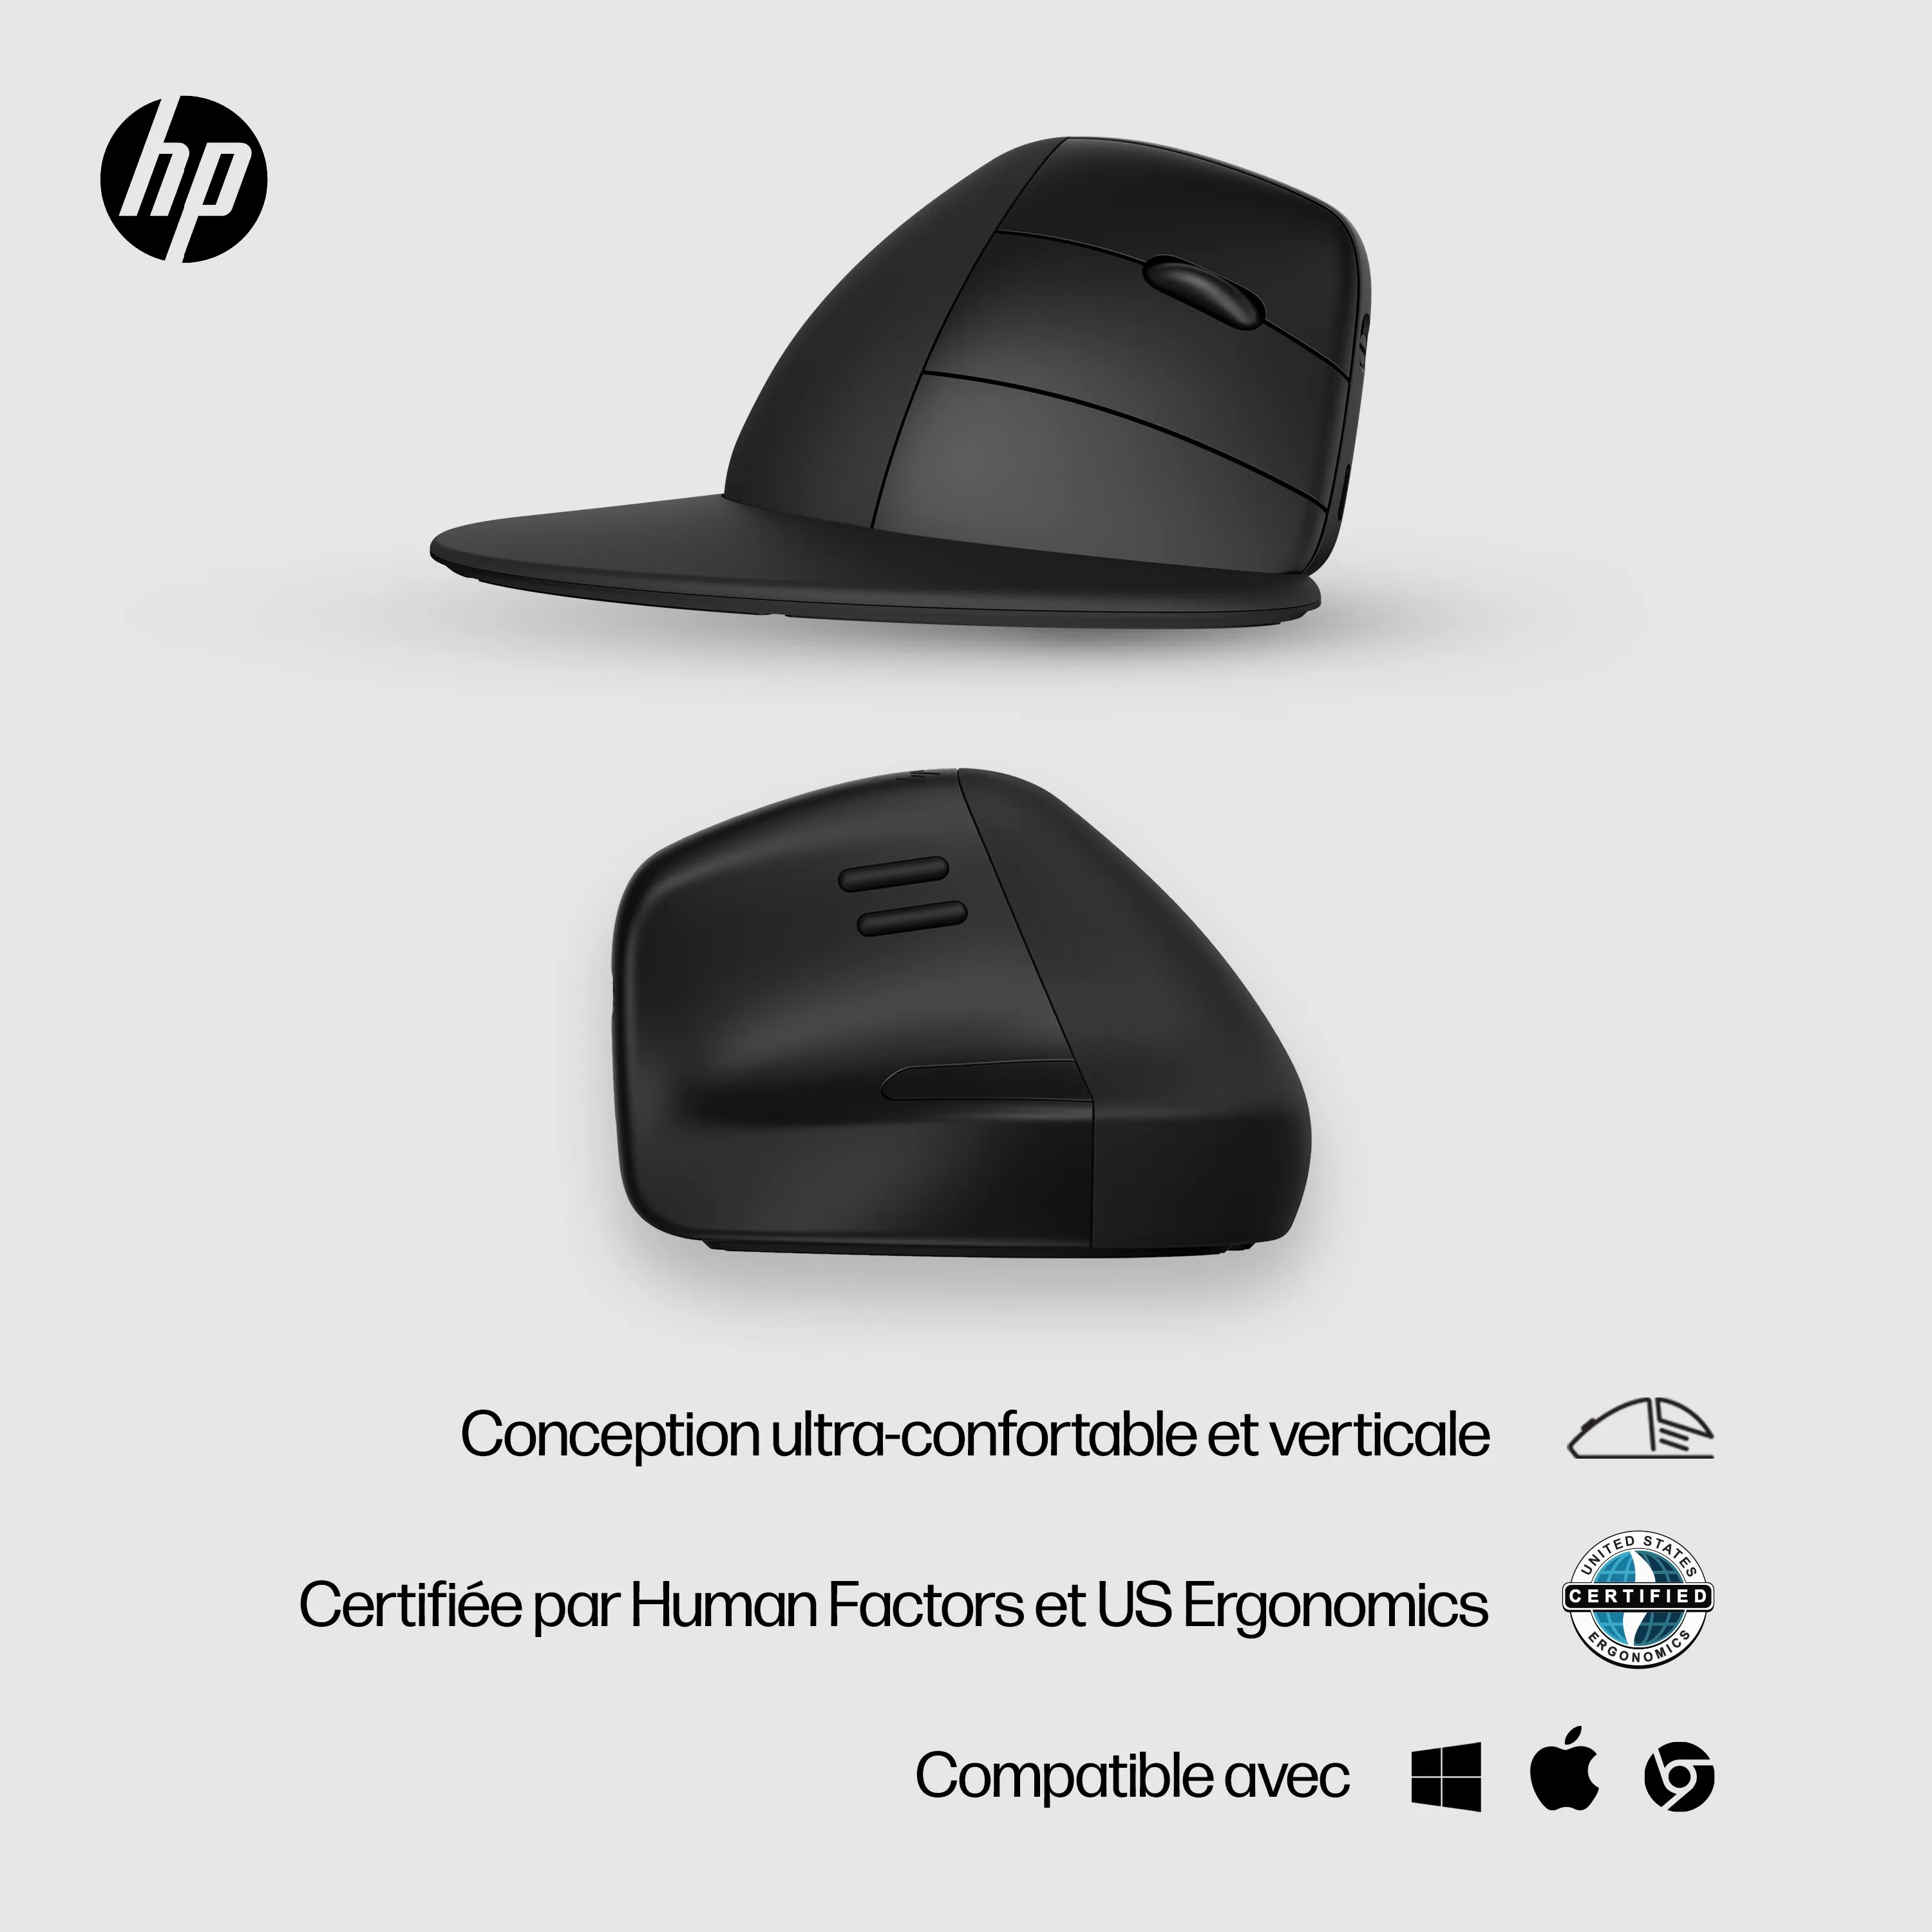 Vente HP 925 Ergonomic Vertical Wireless Mouse HP au meilleur prix - visuel 4